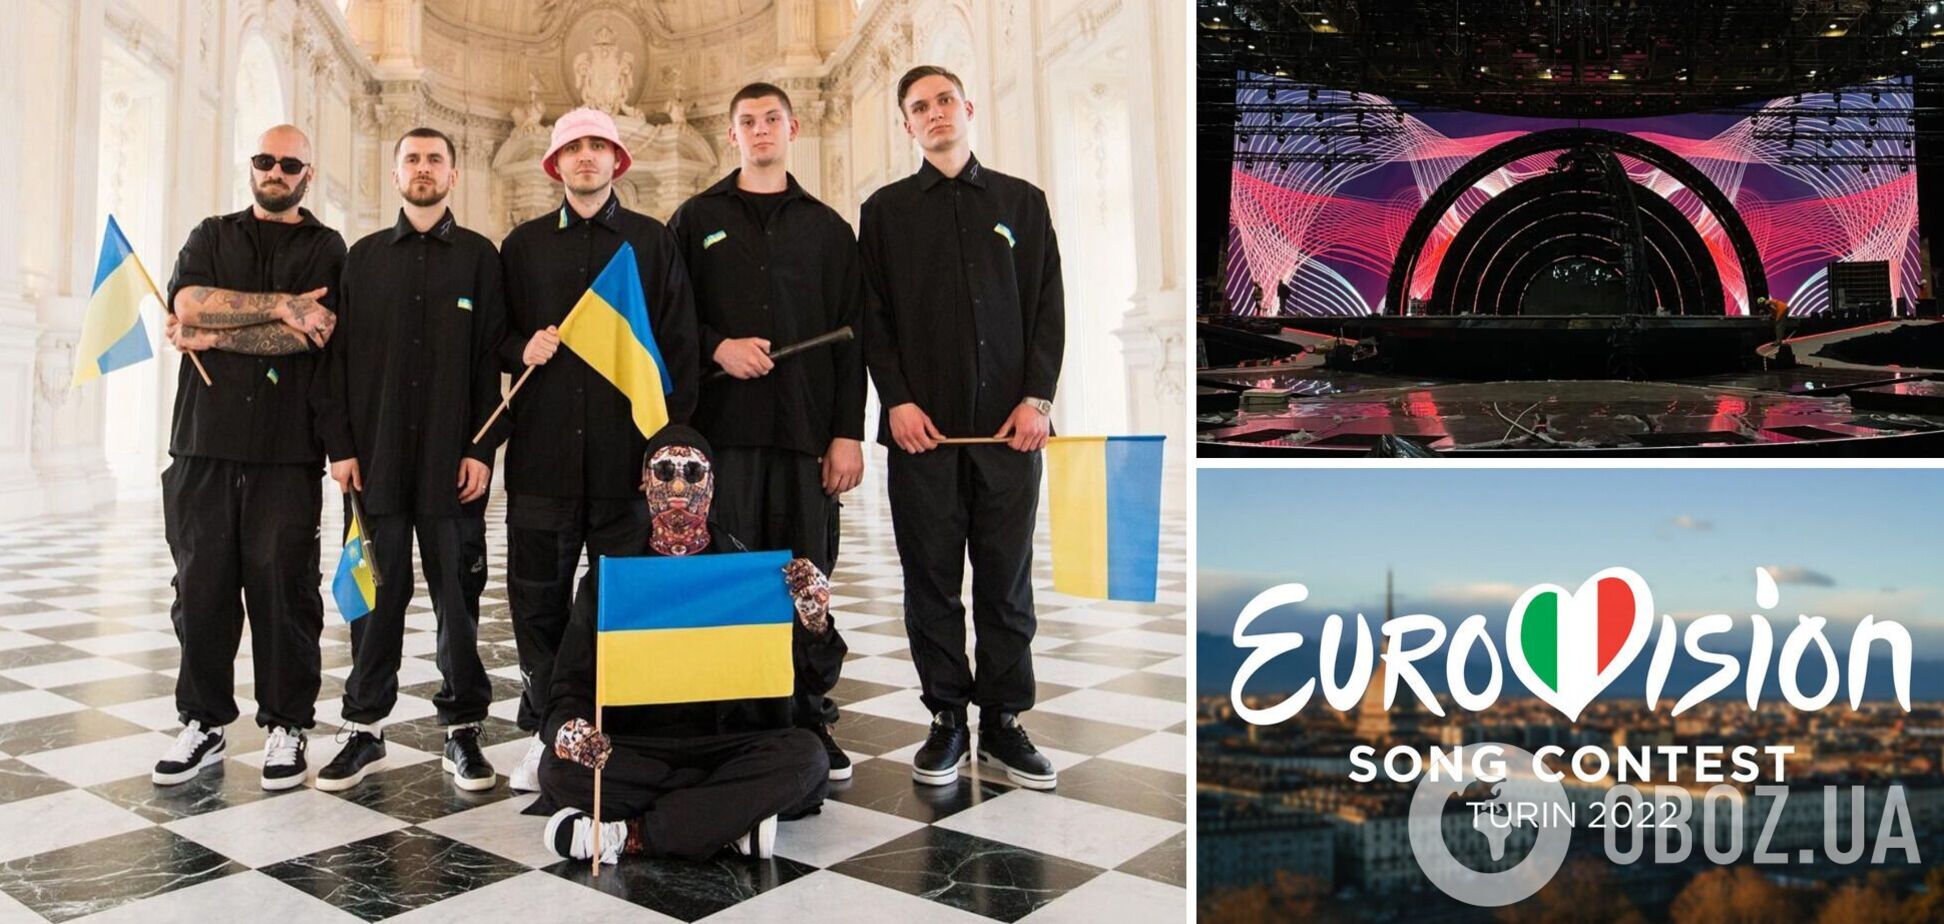 Украина – в финале! Как прошел первый полуфинал Евровидения-2022. Все подробности, фото и видео